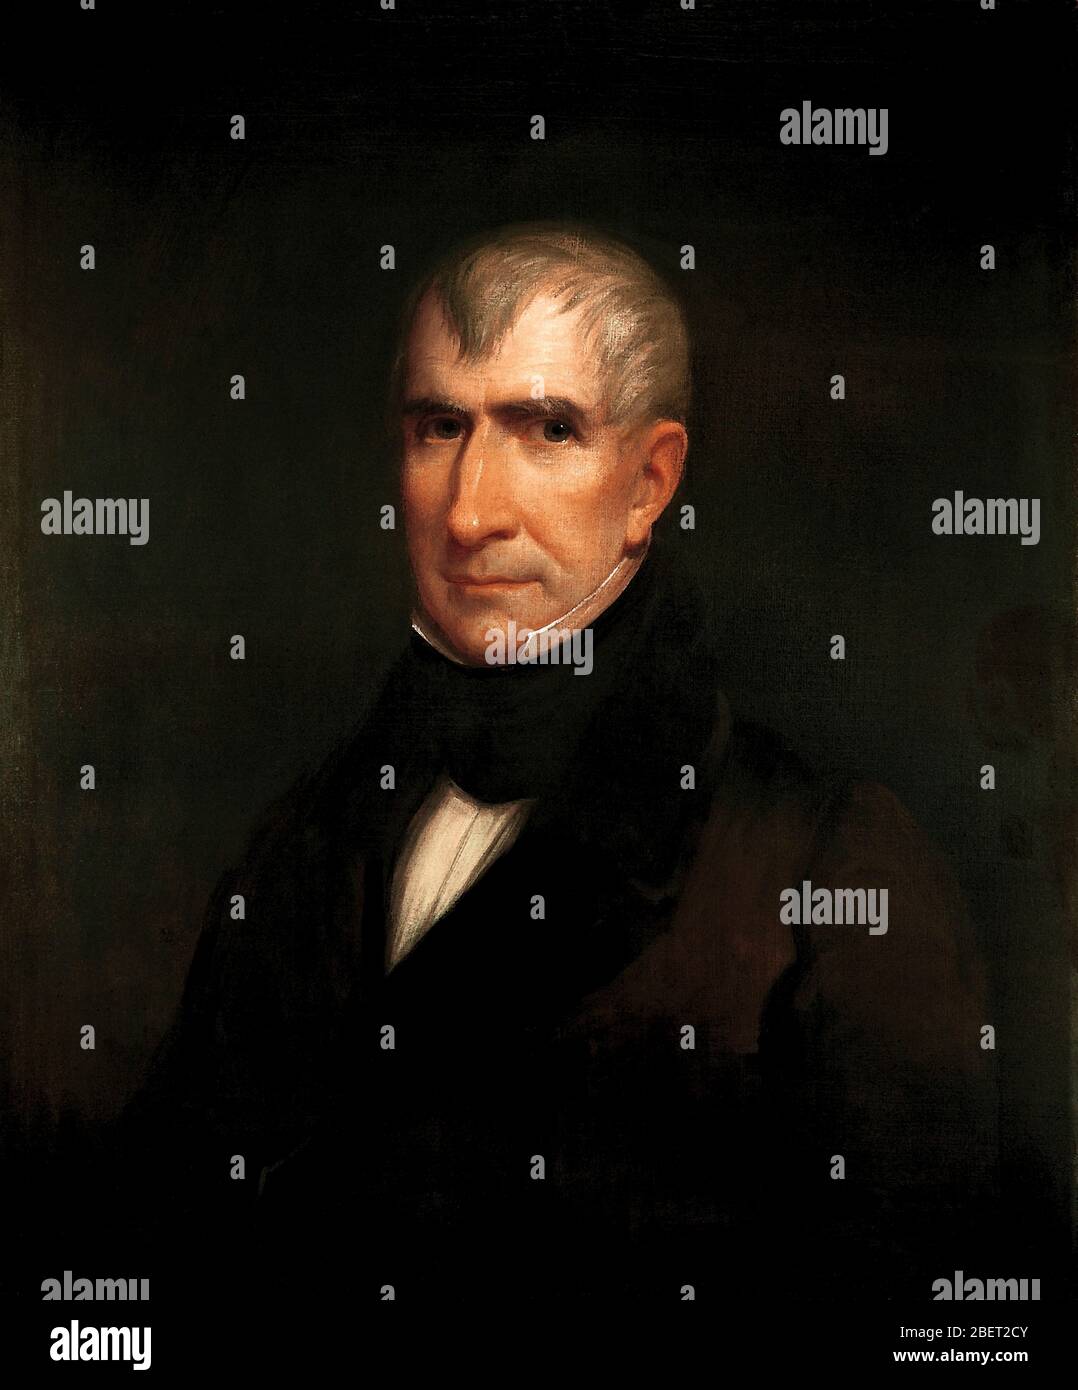 US-Präsidenten-Porträt von William Henry Harrison, 9. US-Präsident. Stockfoto